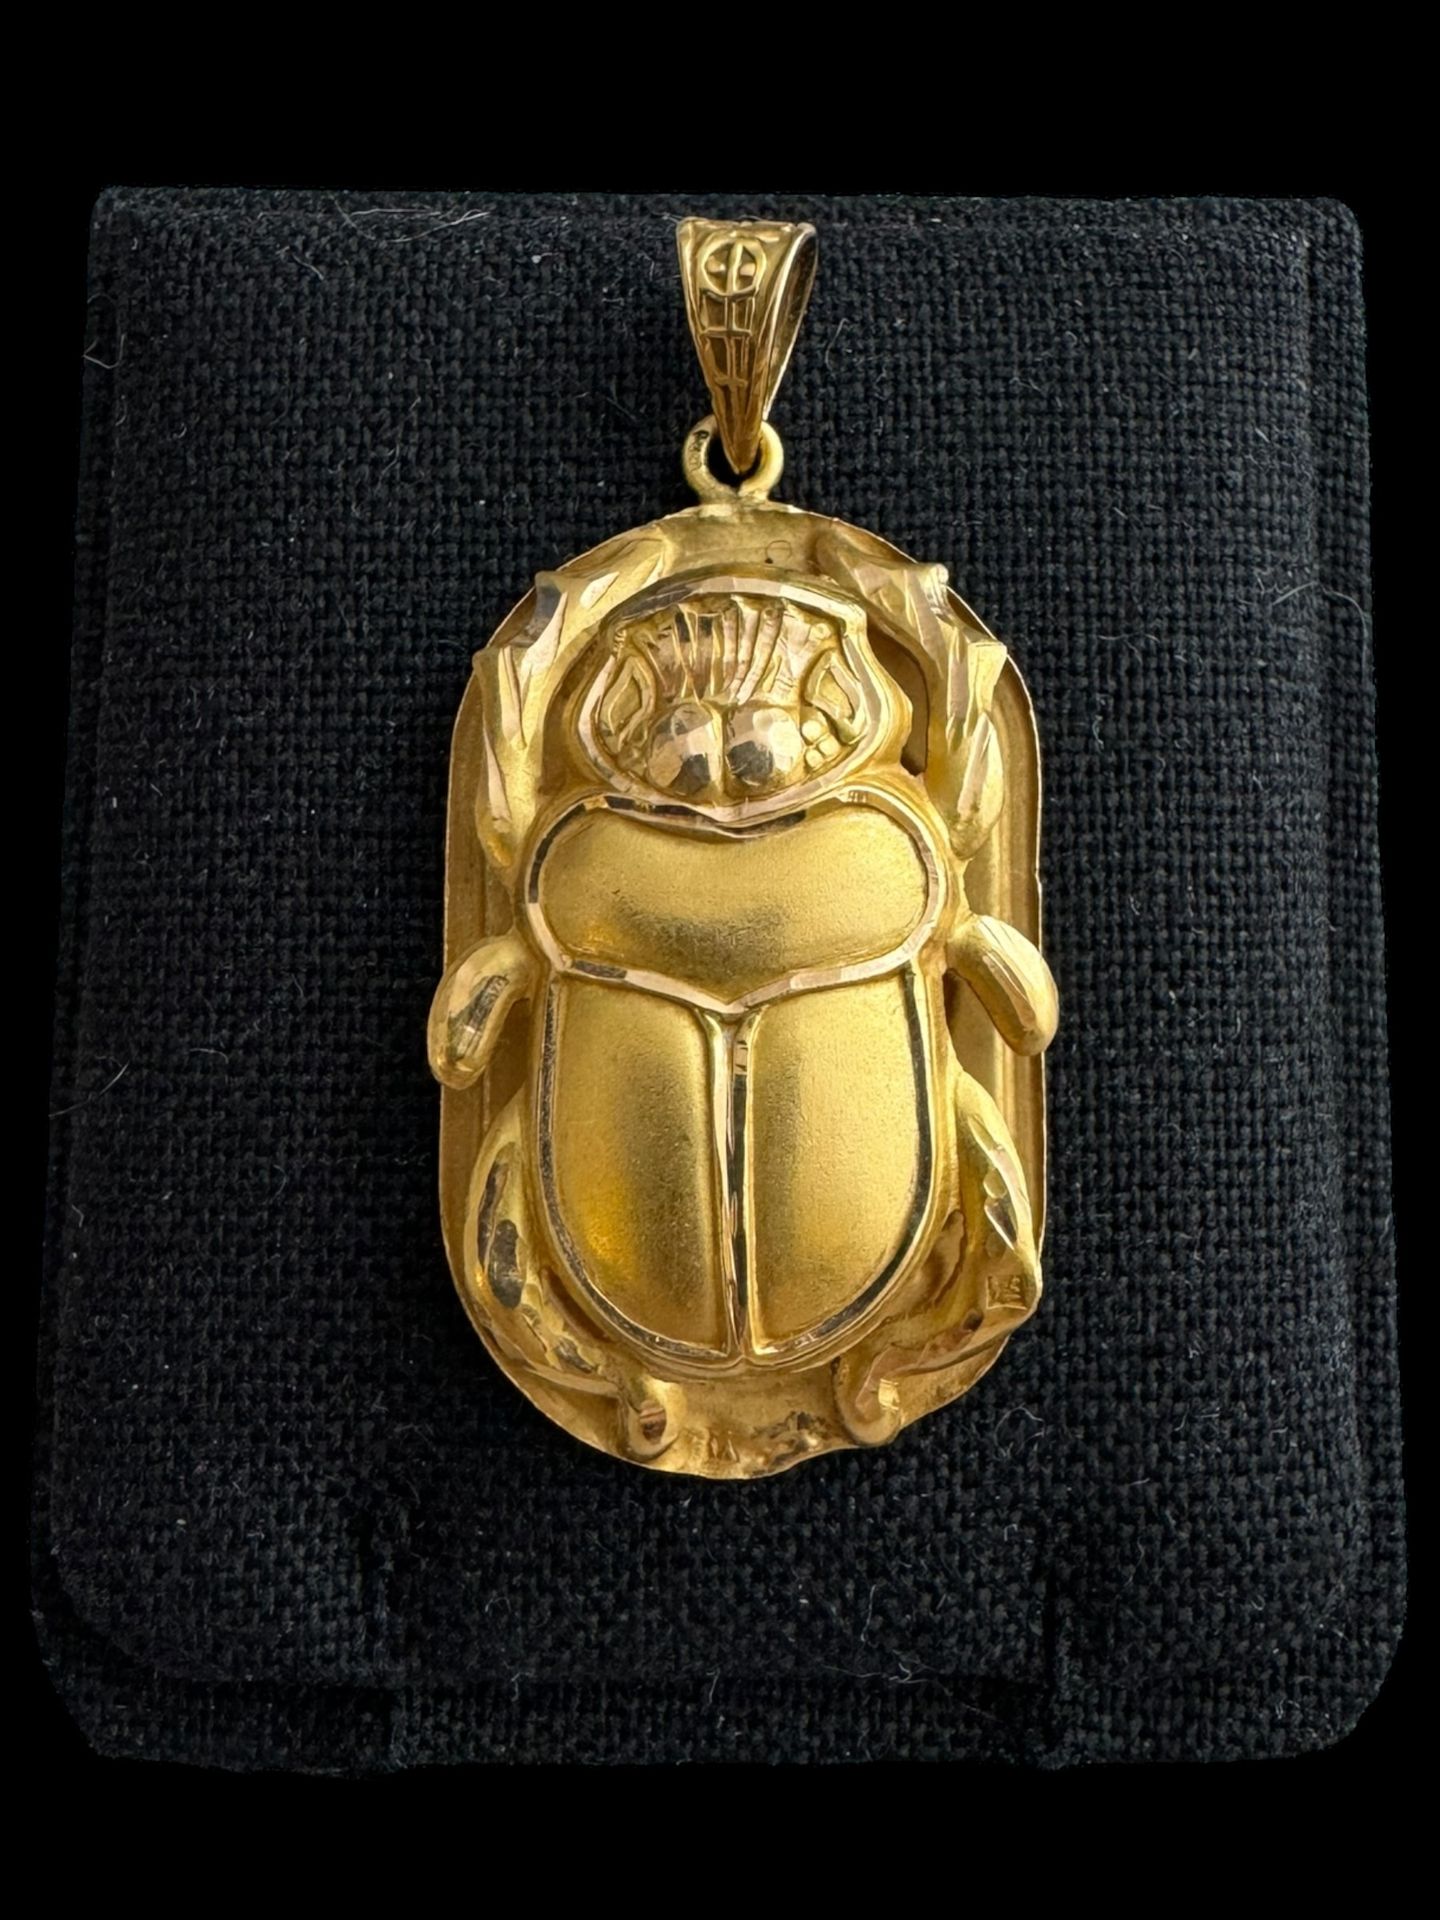 Null Pendentif en or jaune (18k ) figurant un scarabée
Poids : 4,5 g